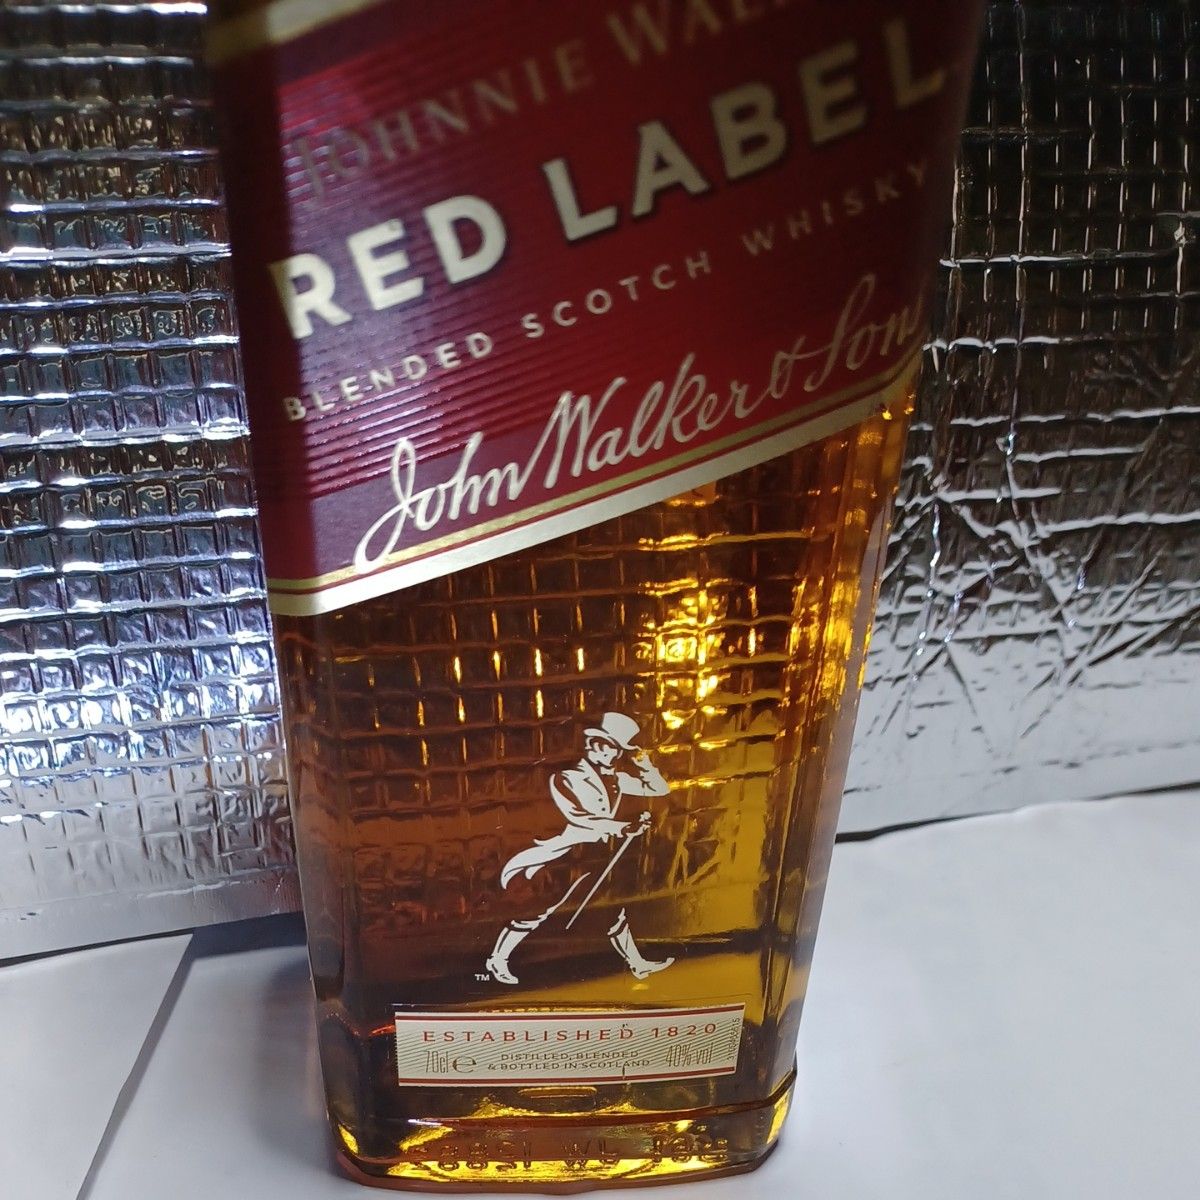 ジョニーウォーカー赤ラベル700ml40度 スコッチウイスキー他のお酒と同一梱包で1000 円に致します☆☆☆